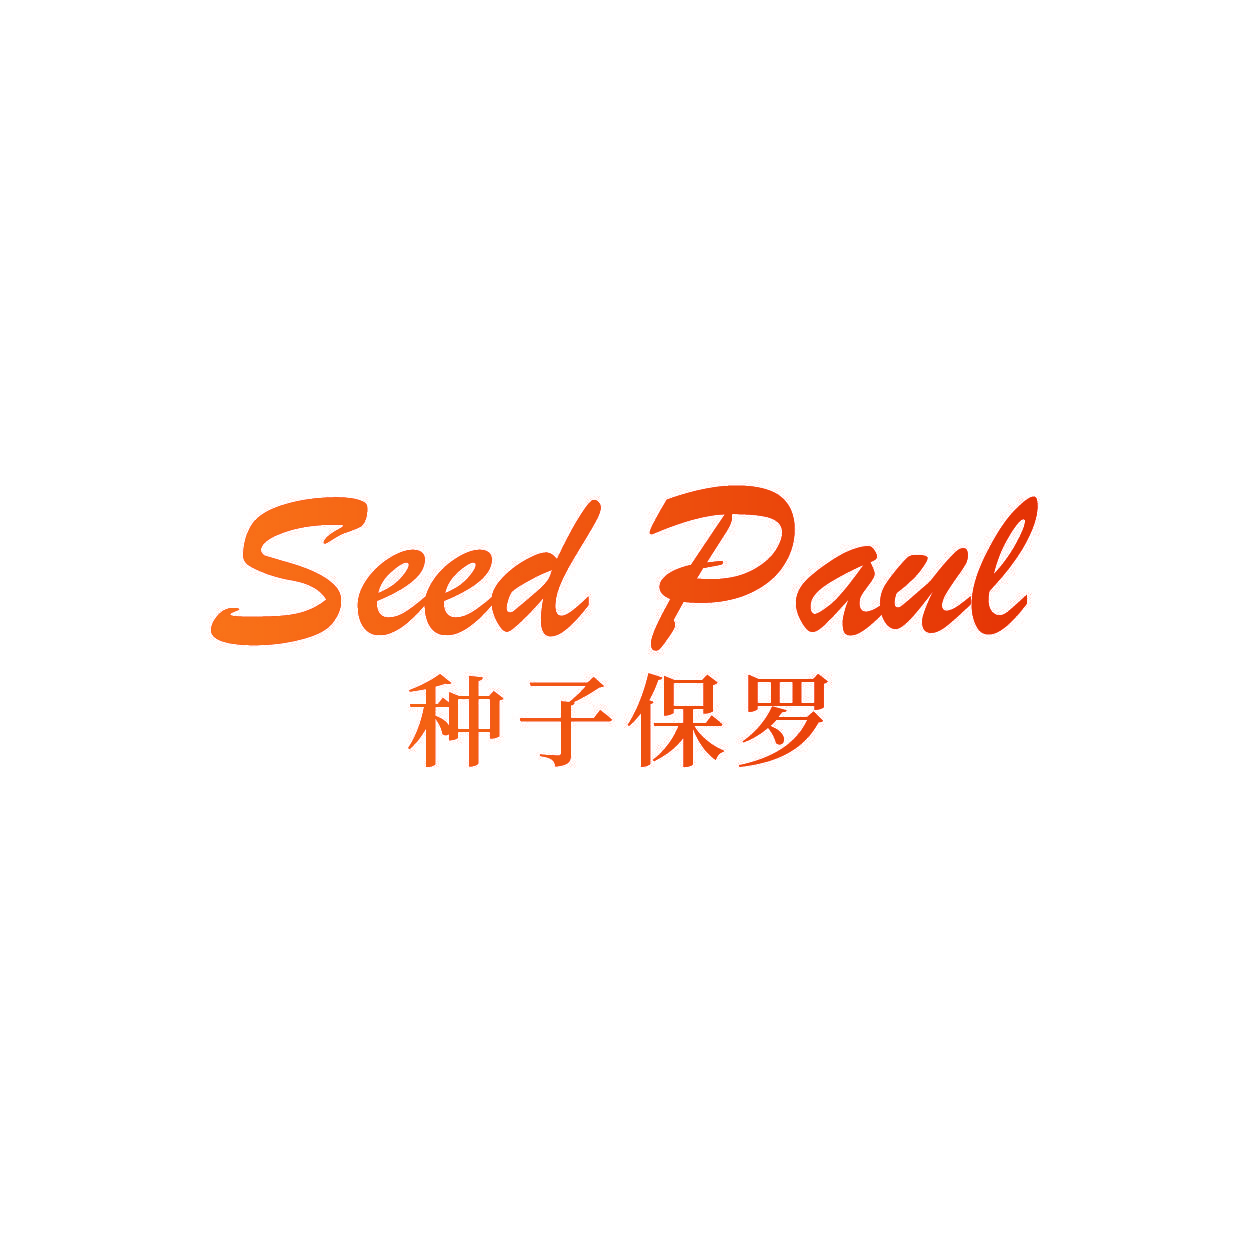 SEED PAUL 种子保罗